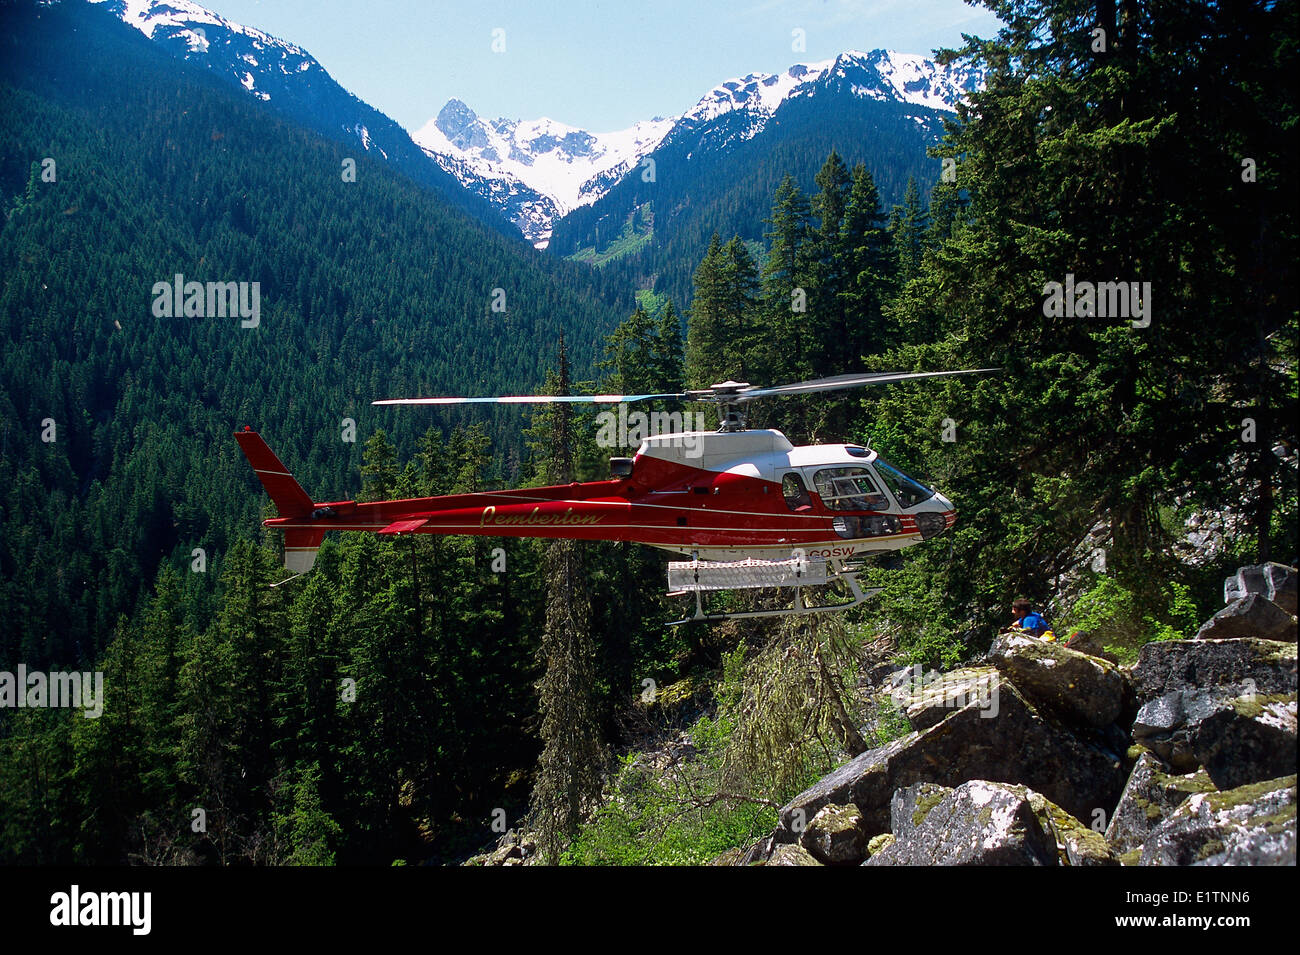 La sortie d'un hélicoptère en vol stationnaire, Billygoat Creek, Pemberton, biologie, étude de la chouette tachetée, BC, Canada Banque D'Images